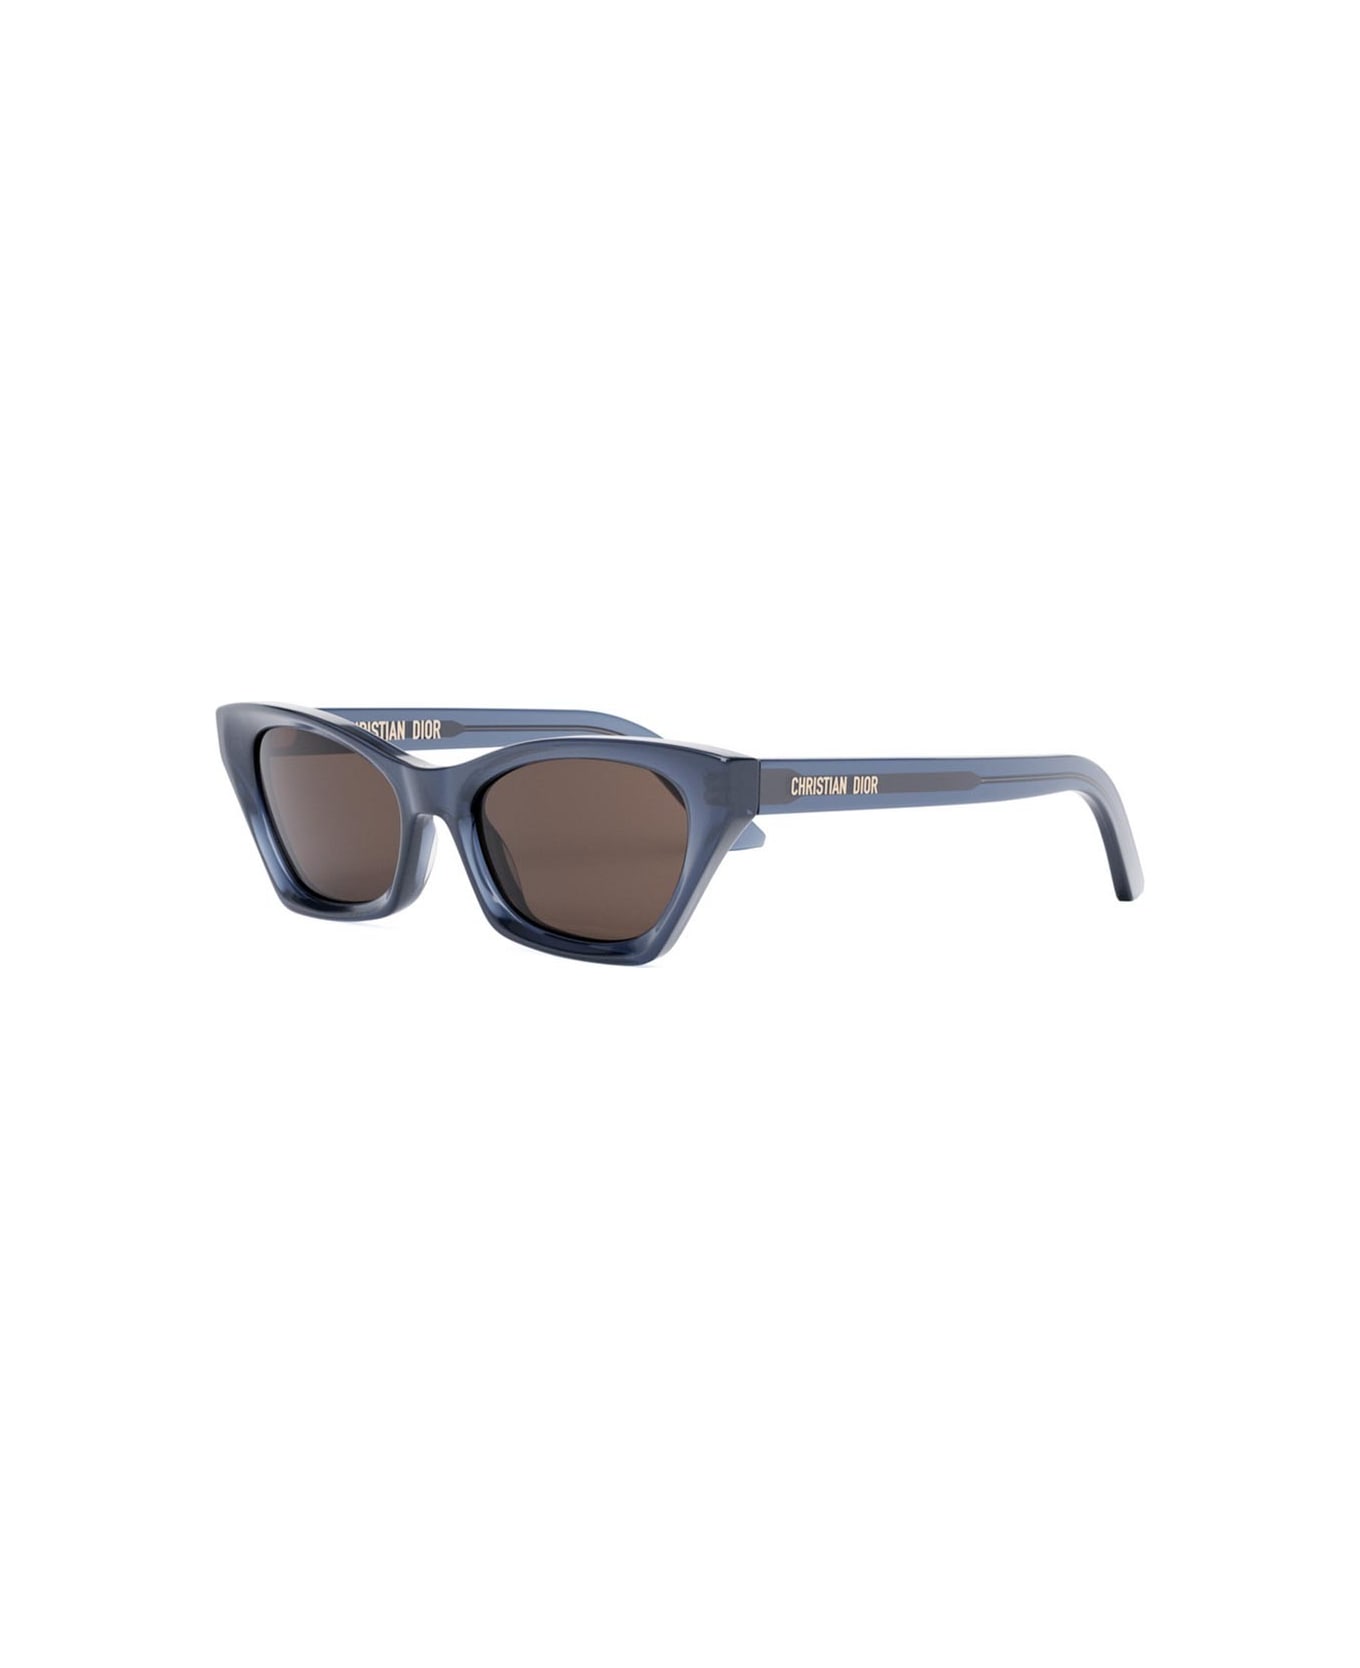 Dior Eyewear Sunglasses - Blu/Grigio